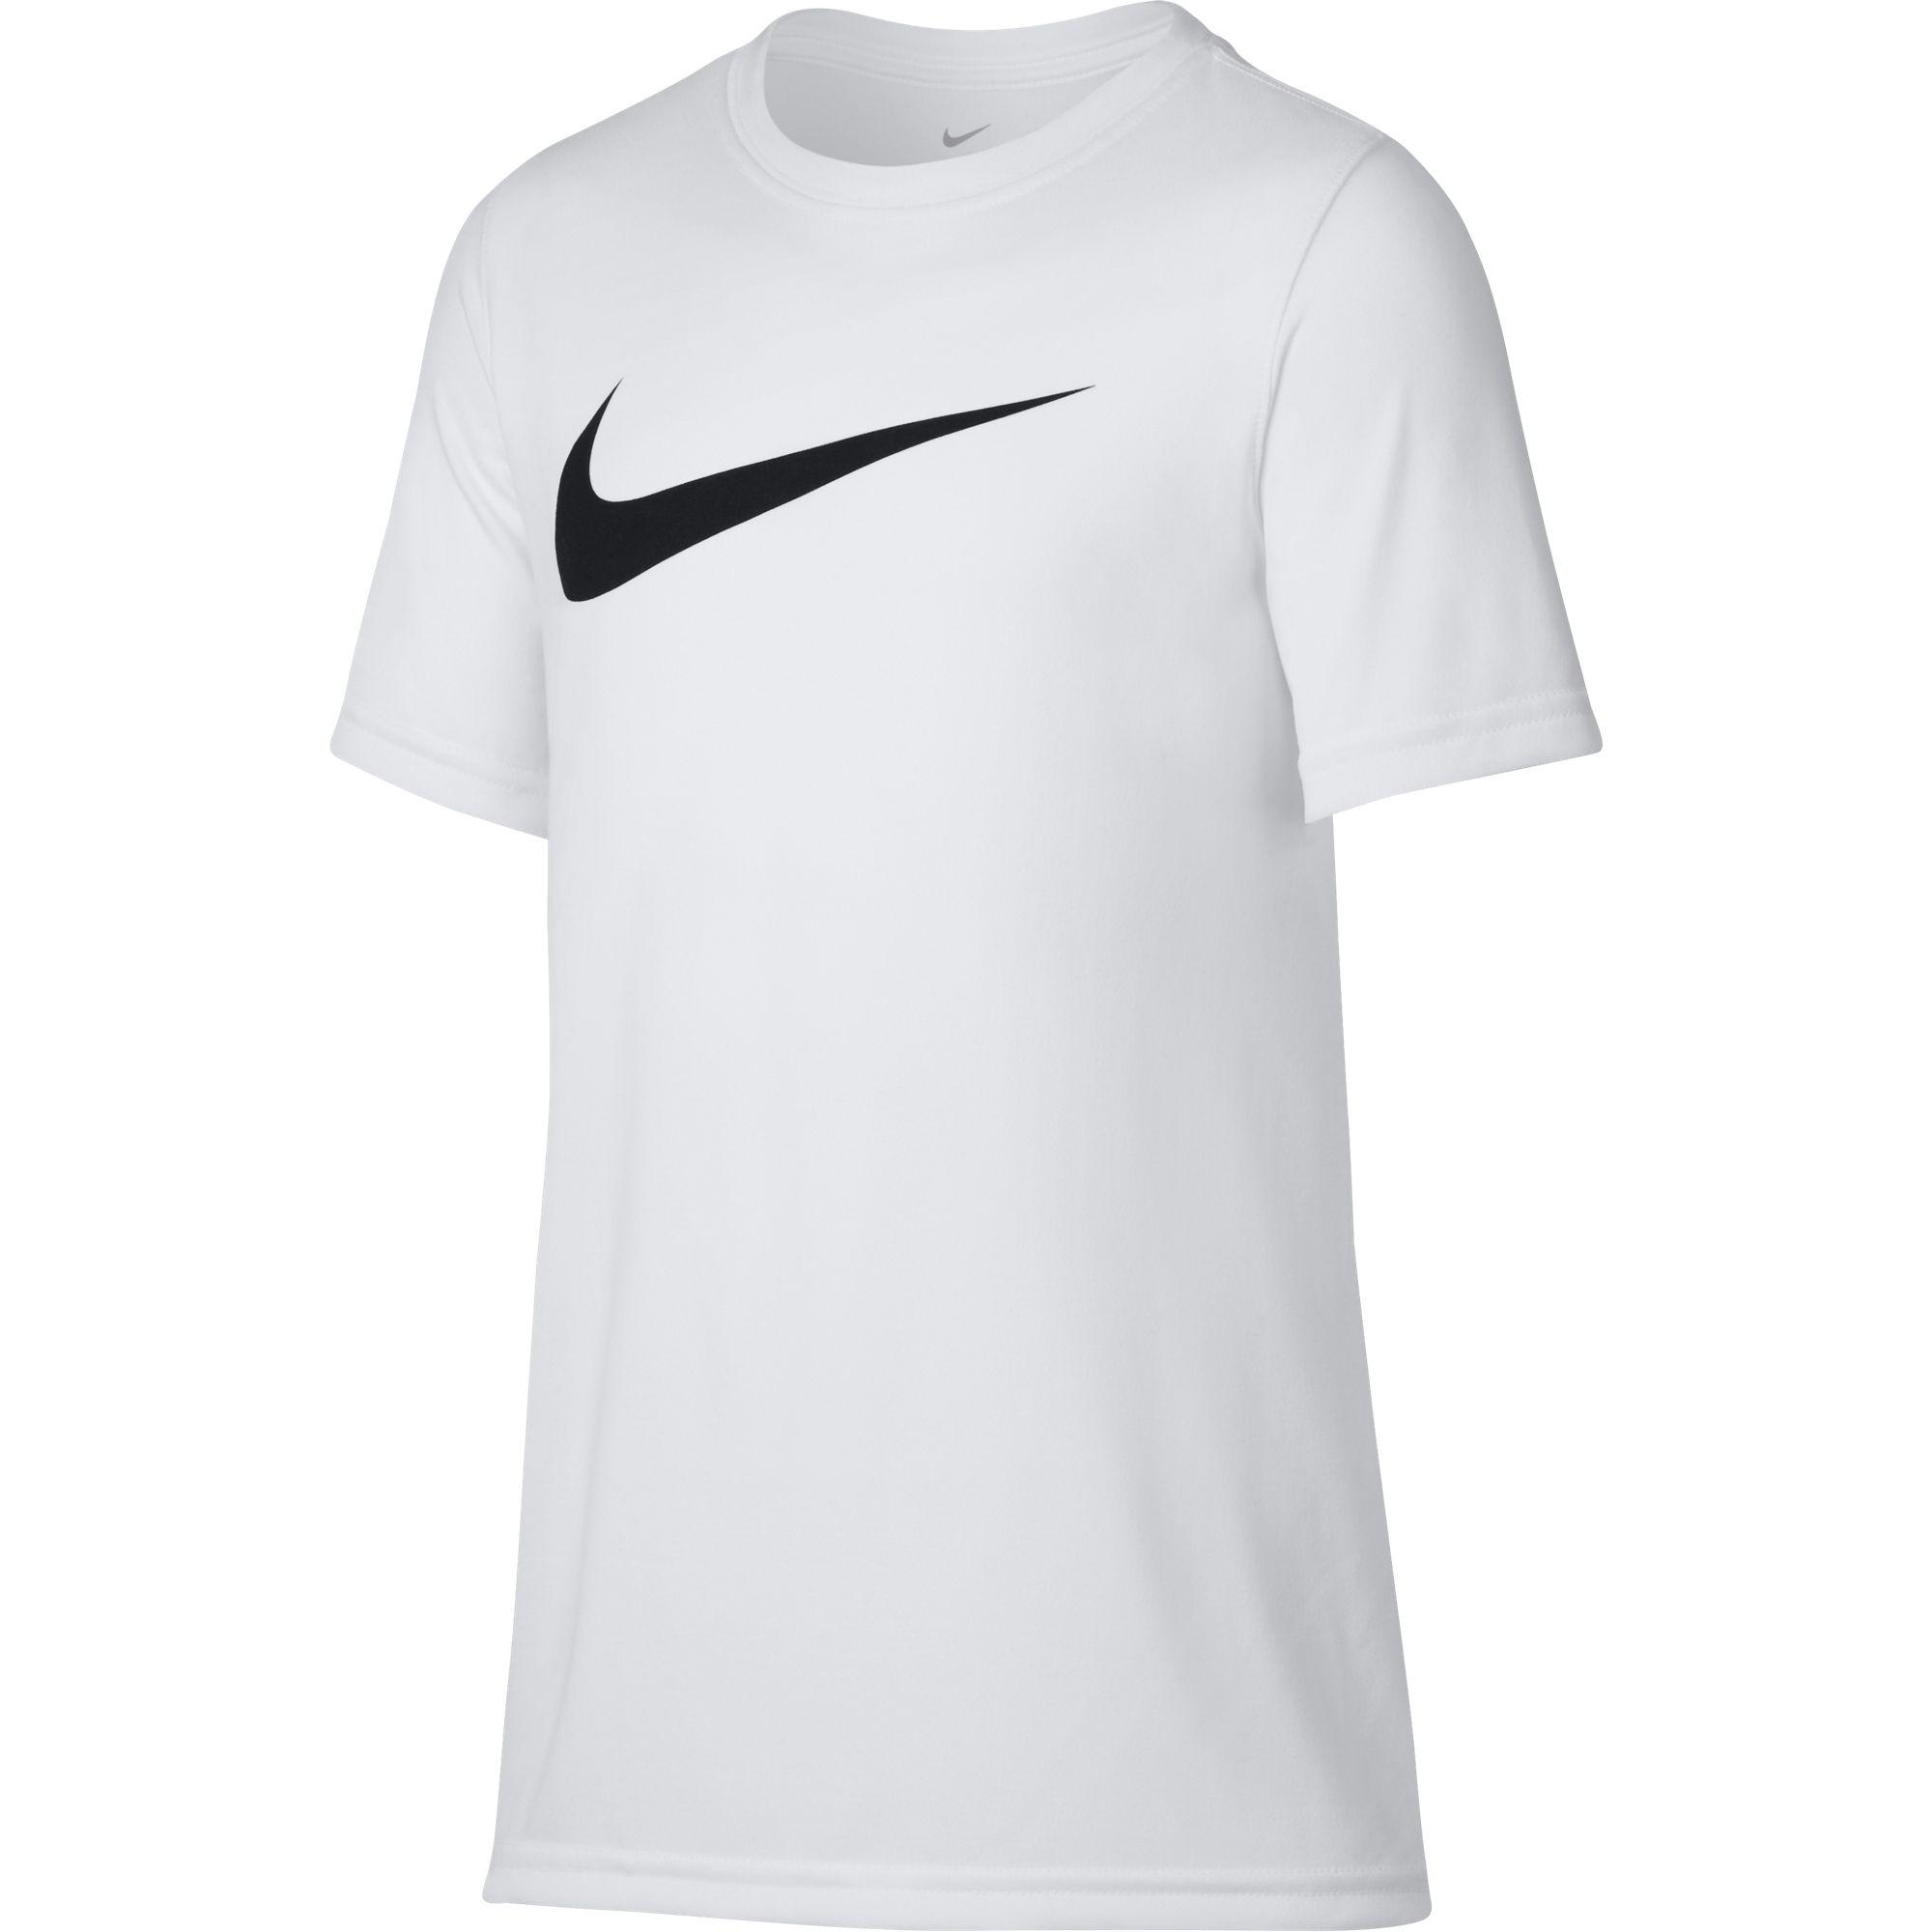 Nike Boys Dry Training T-Shirt - White - Tennisnuts.com